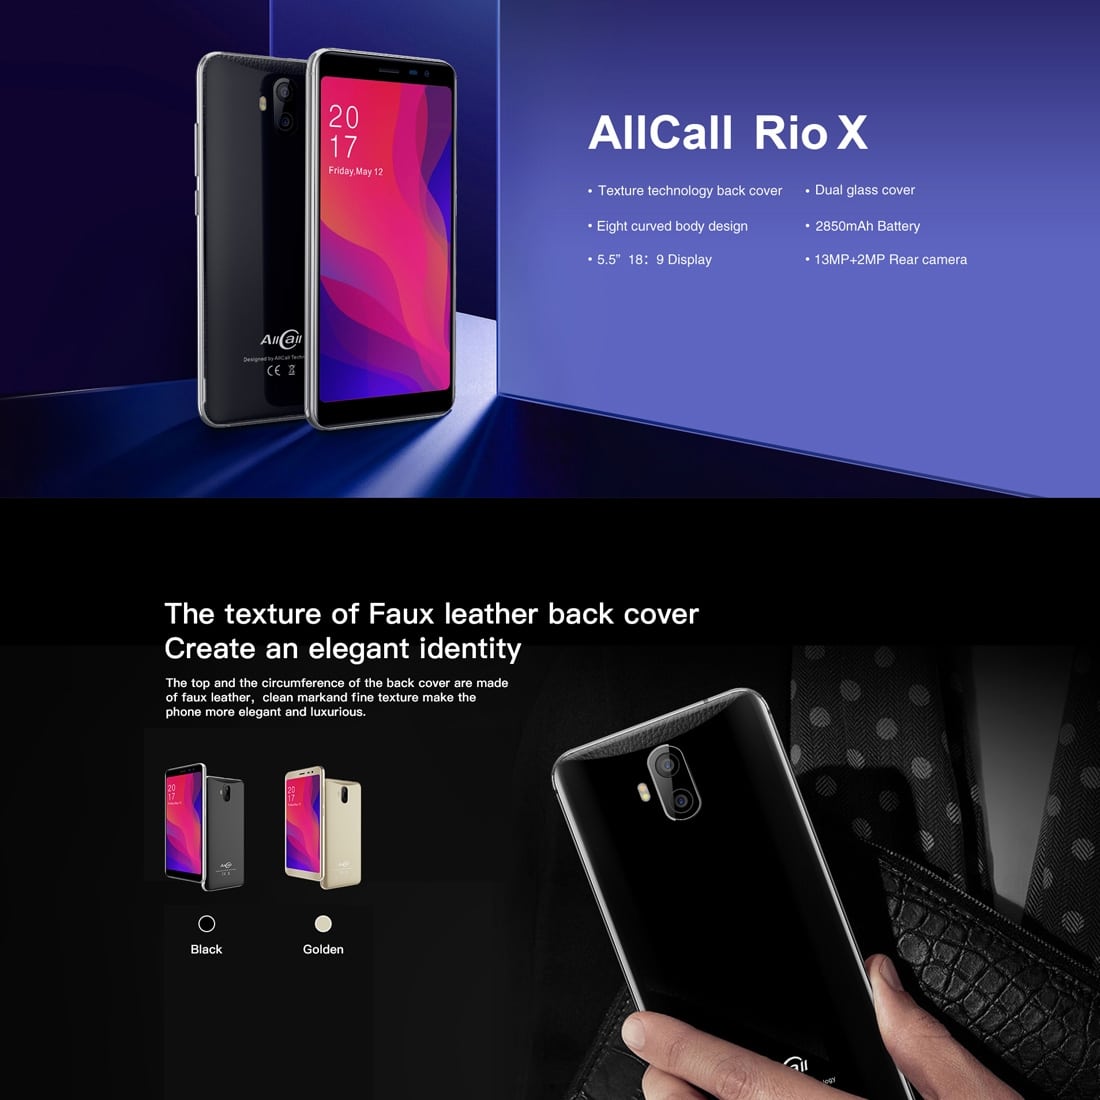 AllCall Rio X Smartphone